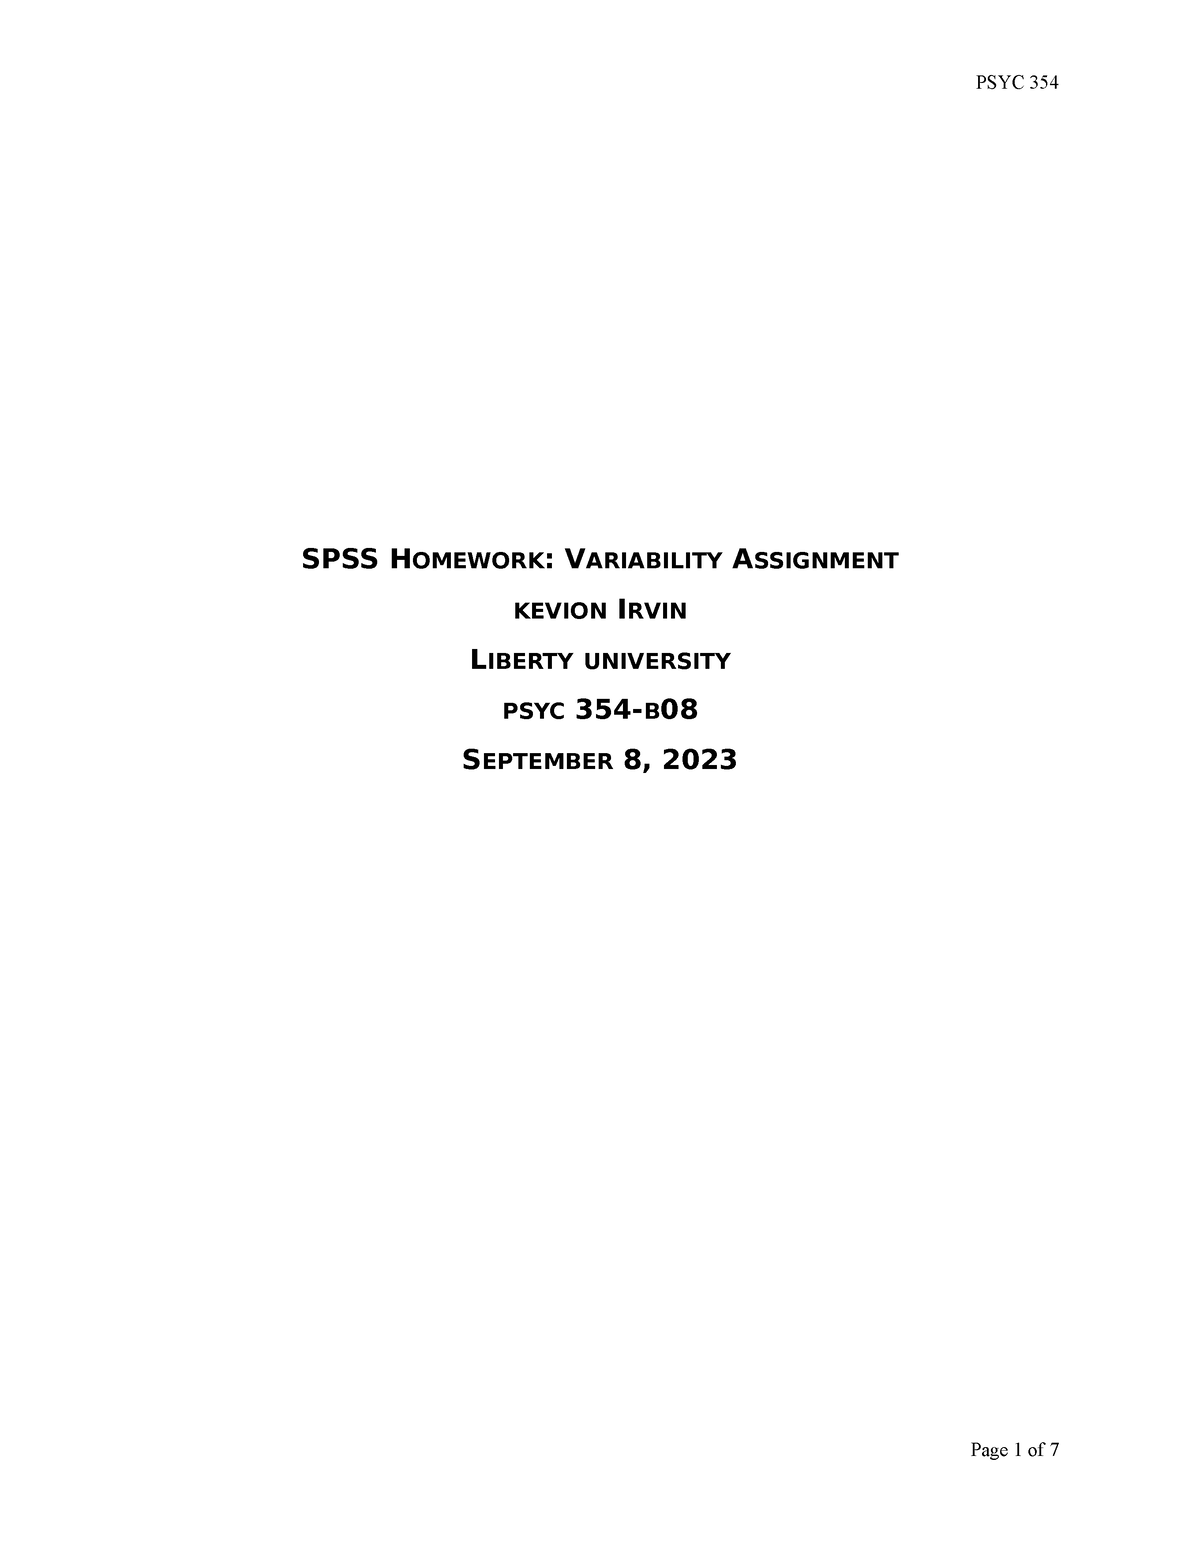 spss homework variability assignment